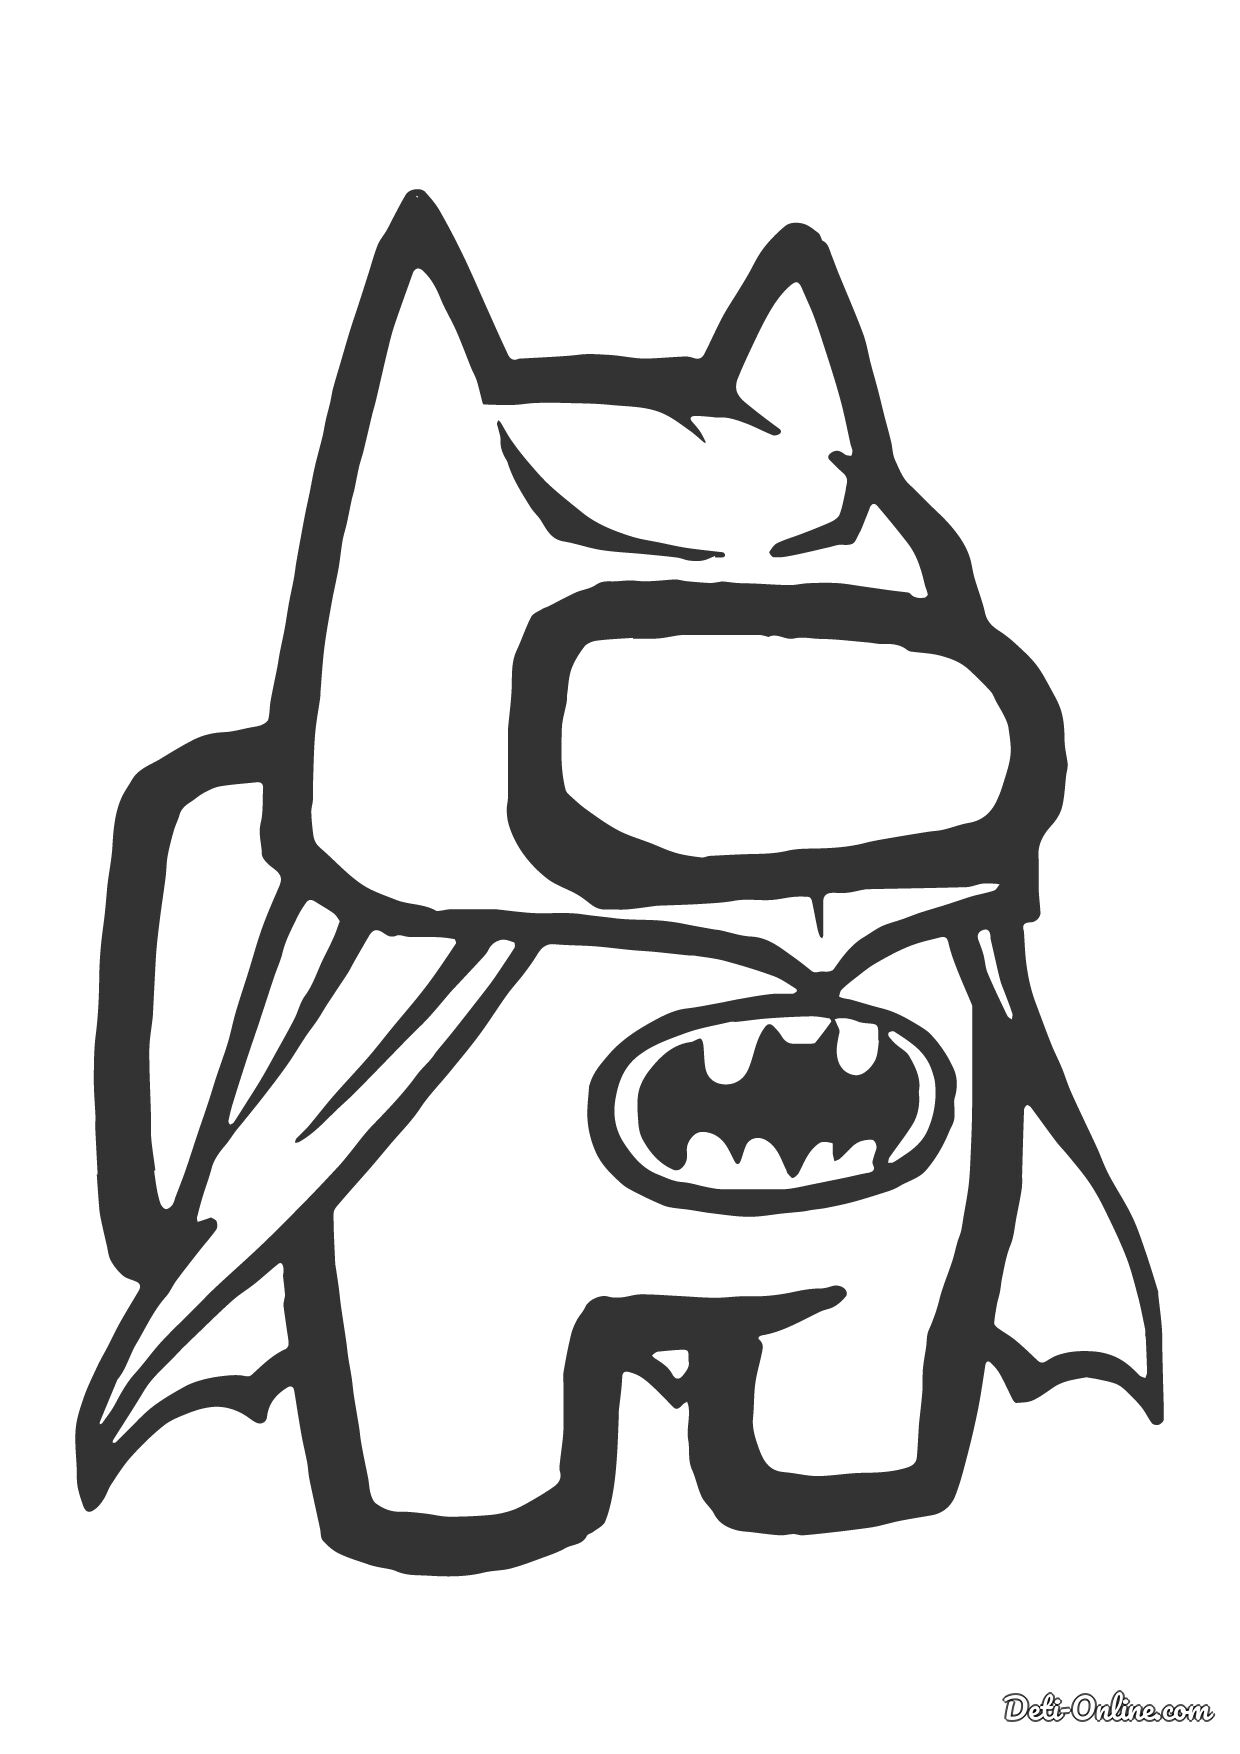 Раскраска Амонг Ас персонаж Бэтмен распечатать или скачать